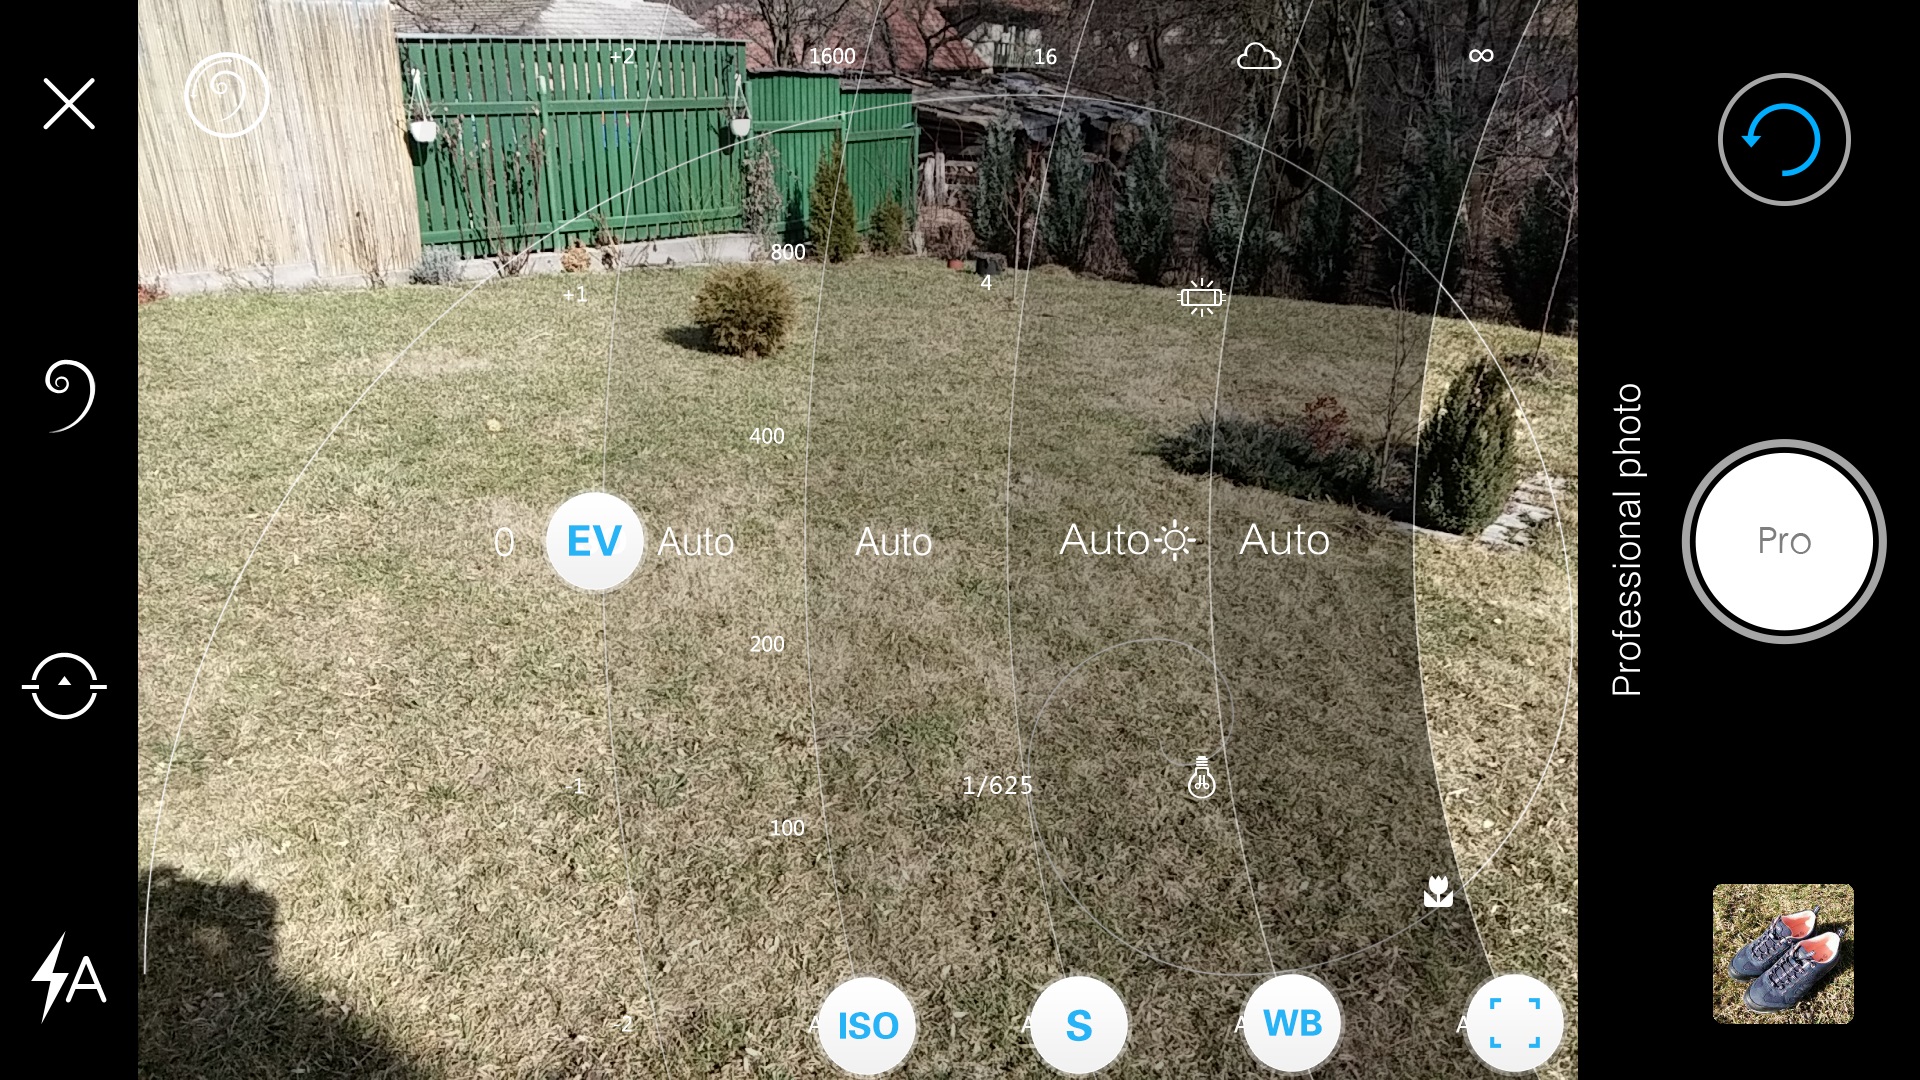 Vivo-X6Plus-camera-app